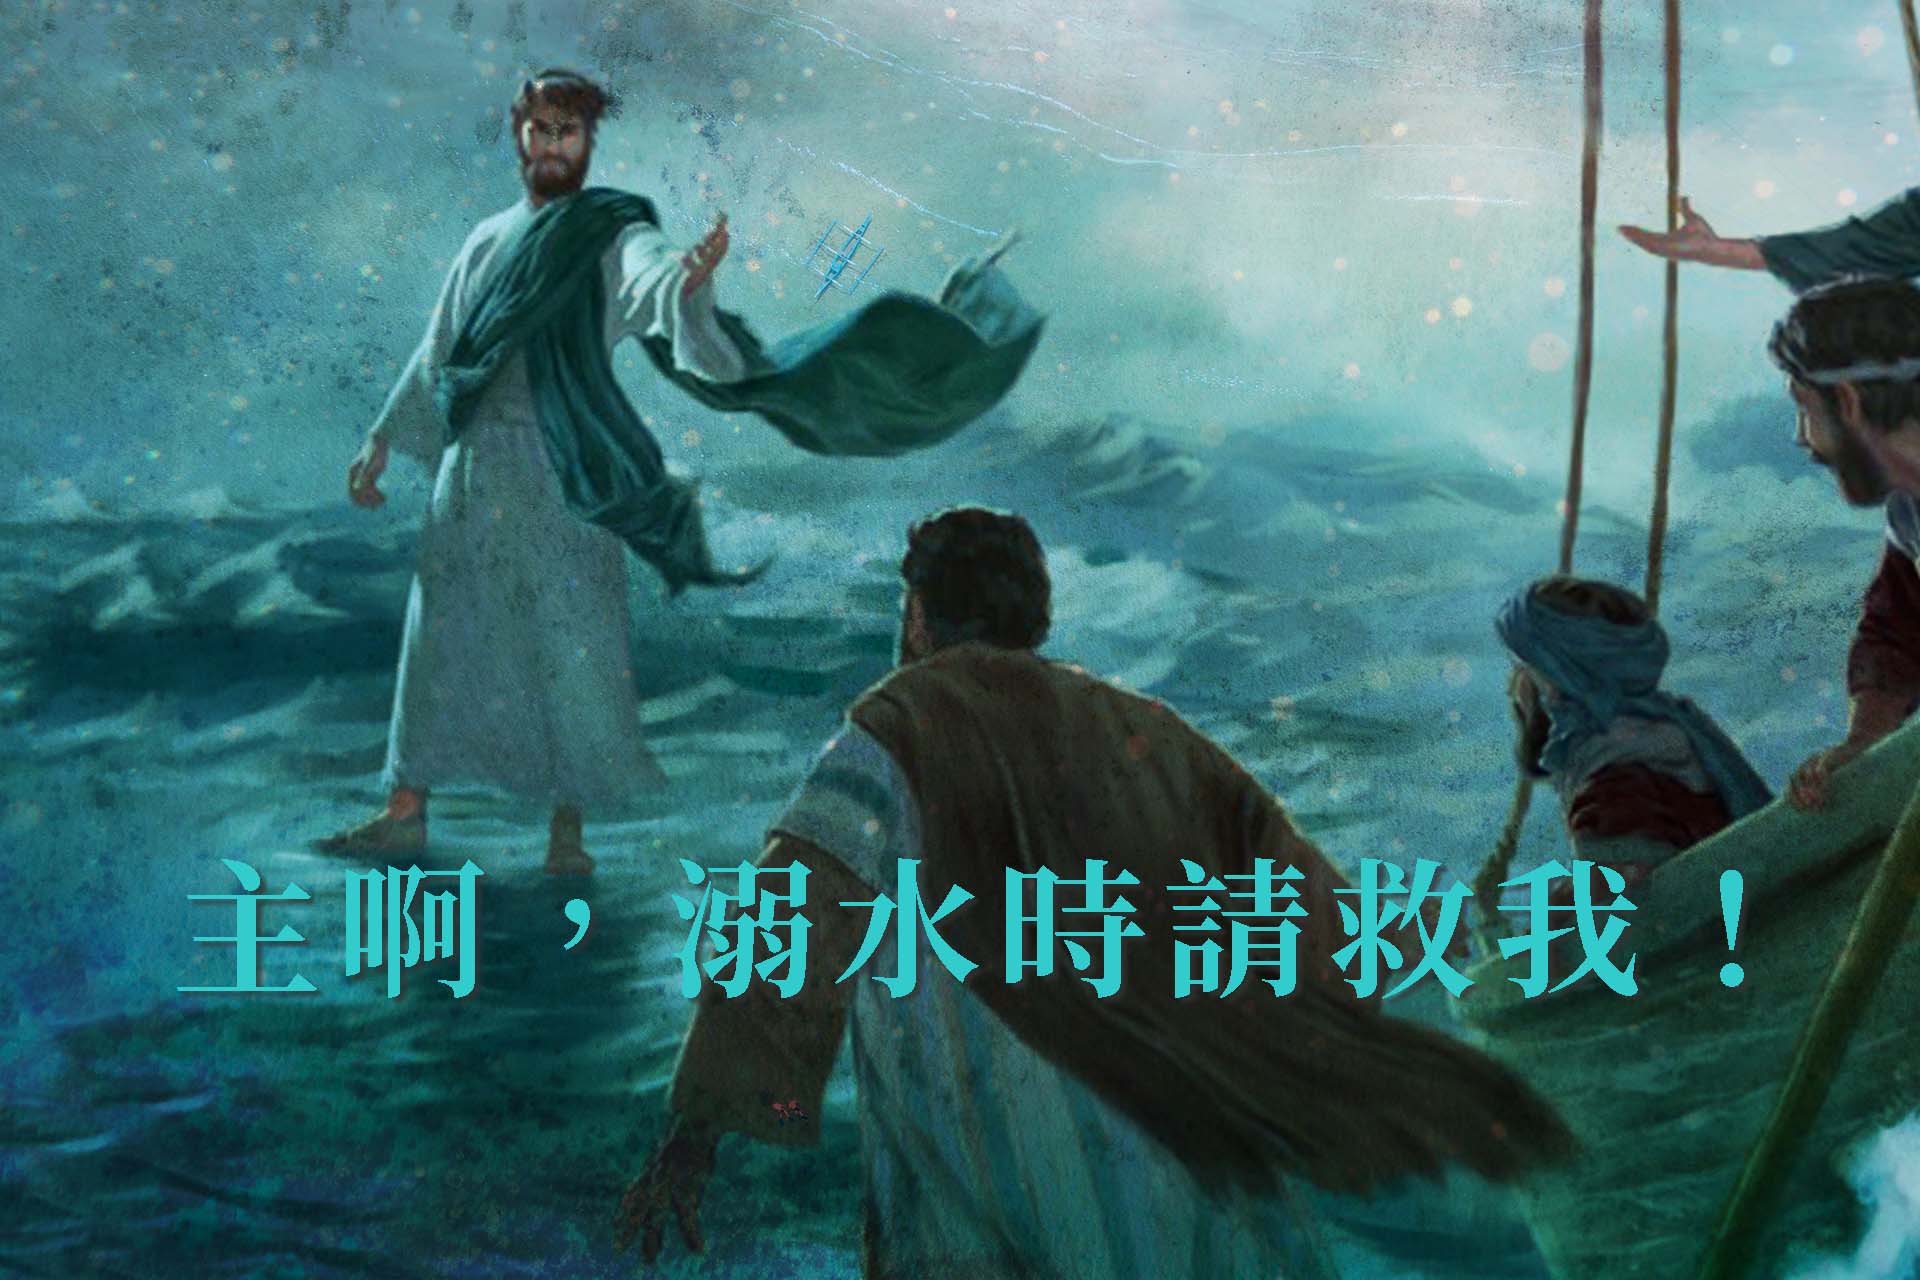 [聖經]主啊溺水時請救我：彼得你是漁夫吧？